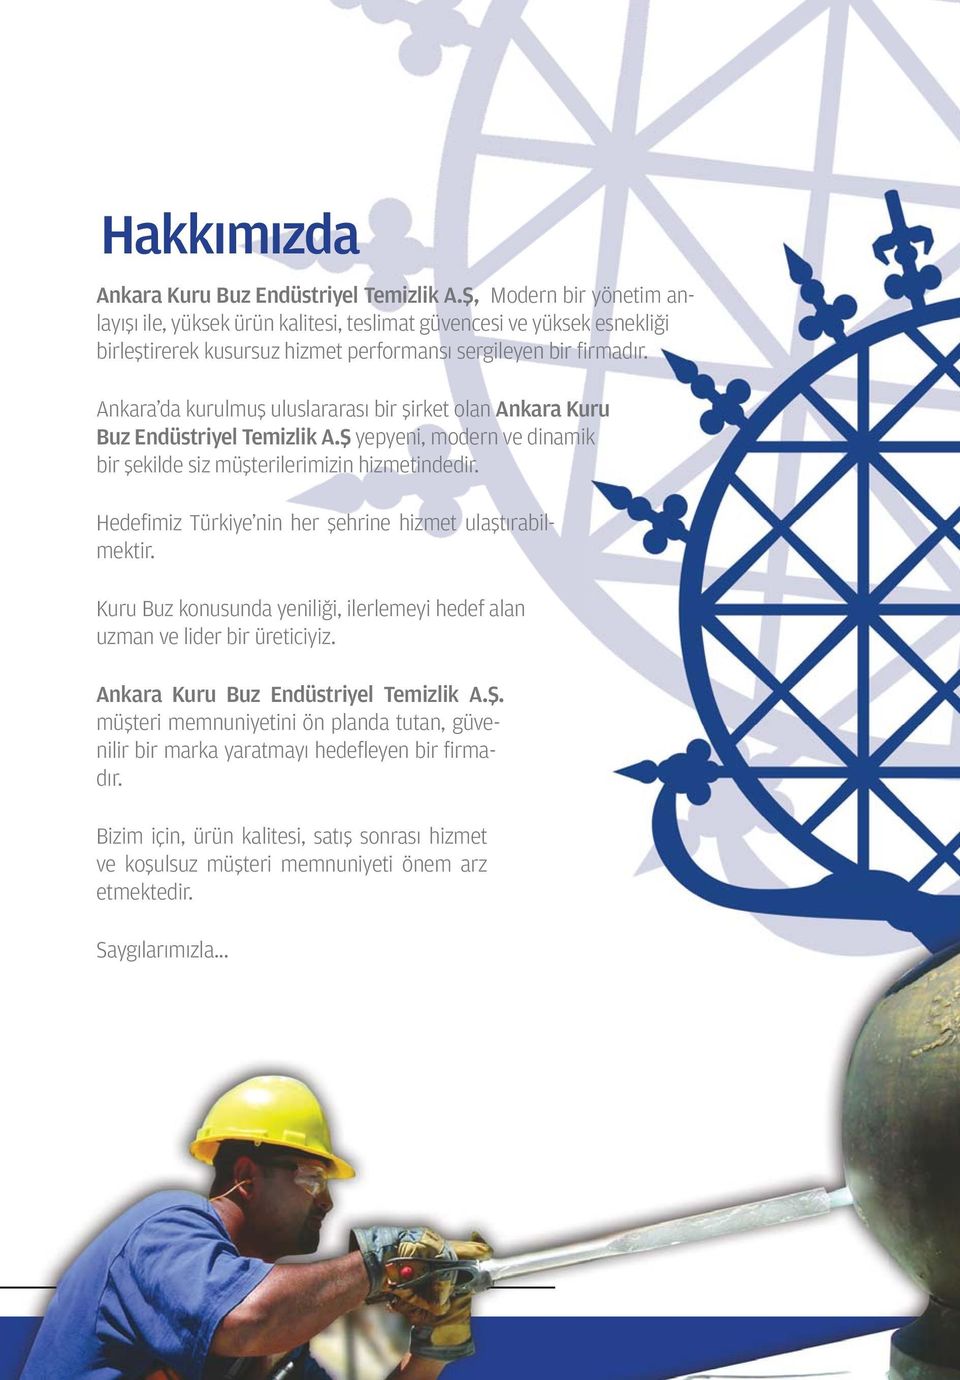 Ankara da kurulmuş uluslararası bir şirket olan Ankara Kuru Buz Endüstriyel Temizlik A.Ş yepyeni, modern ve dinamik bir şekilde siz müşterilerimizin hizmetindedir.